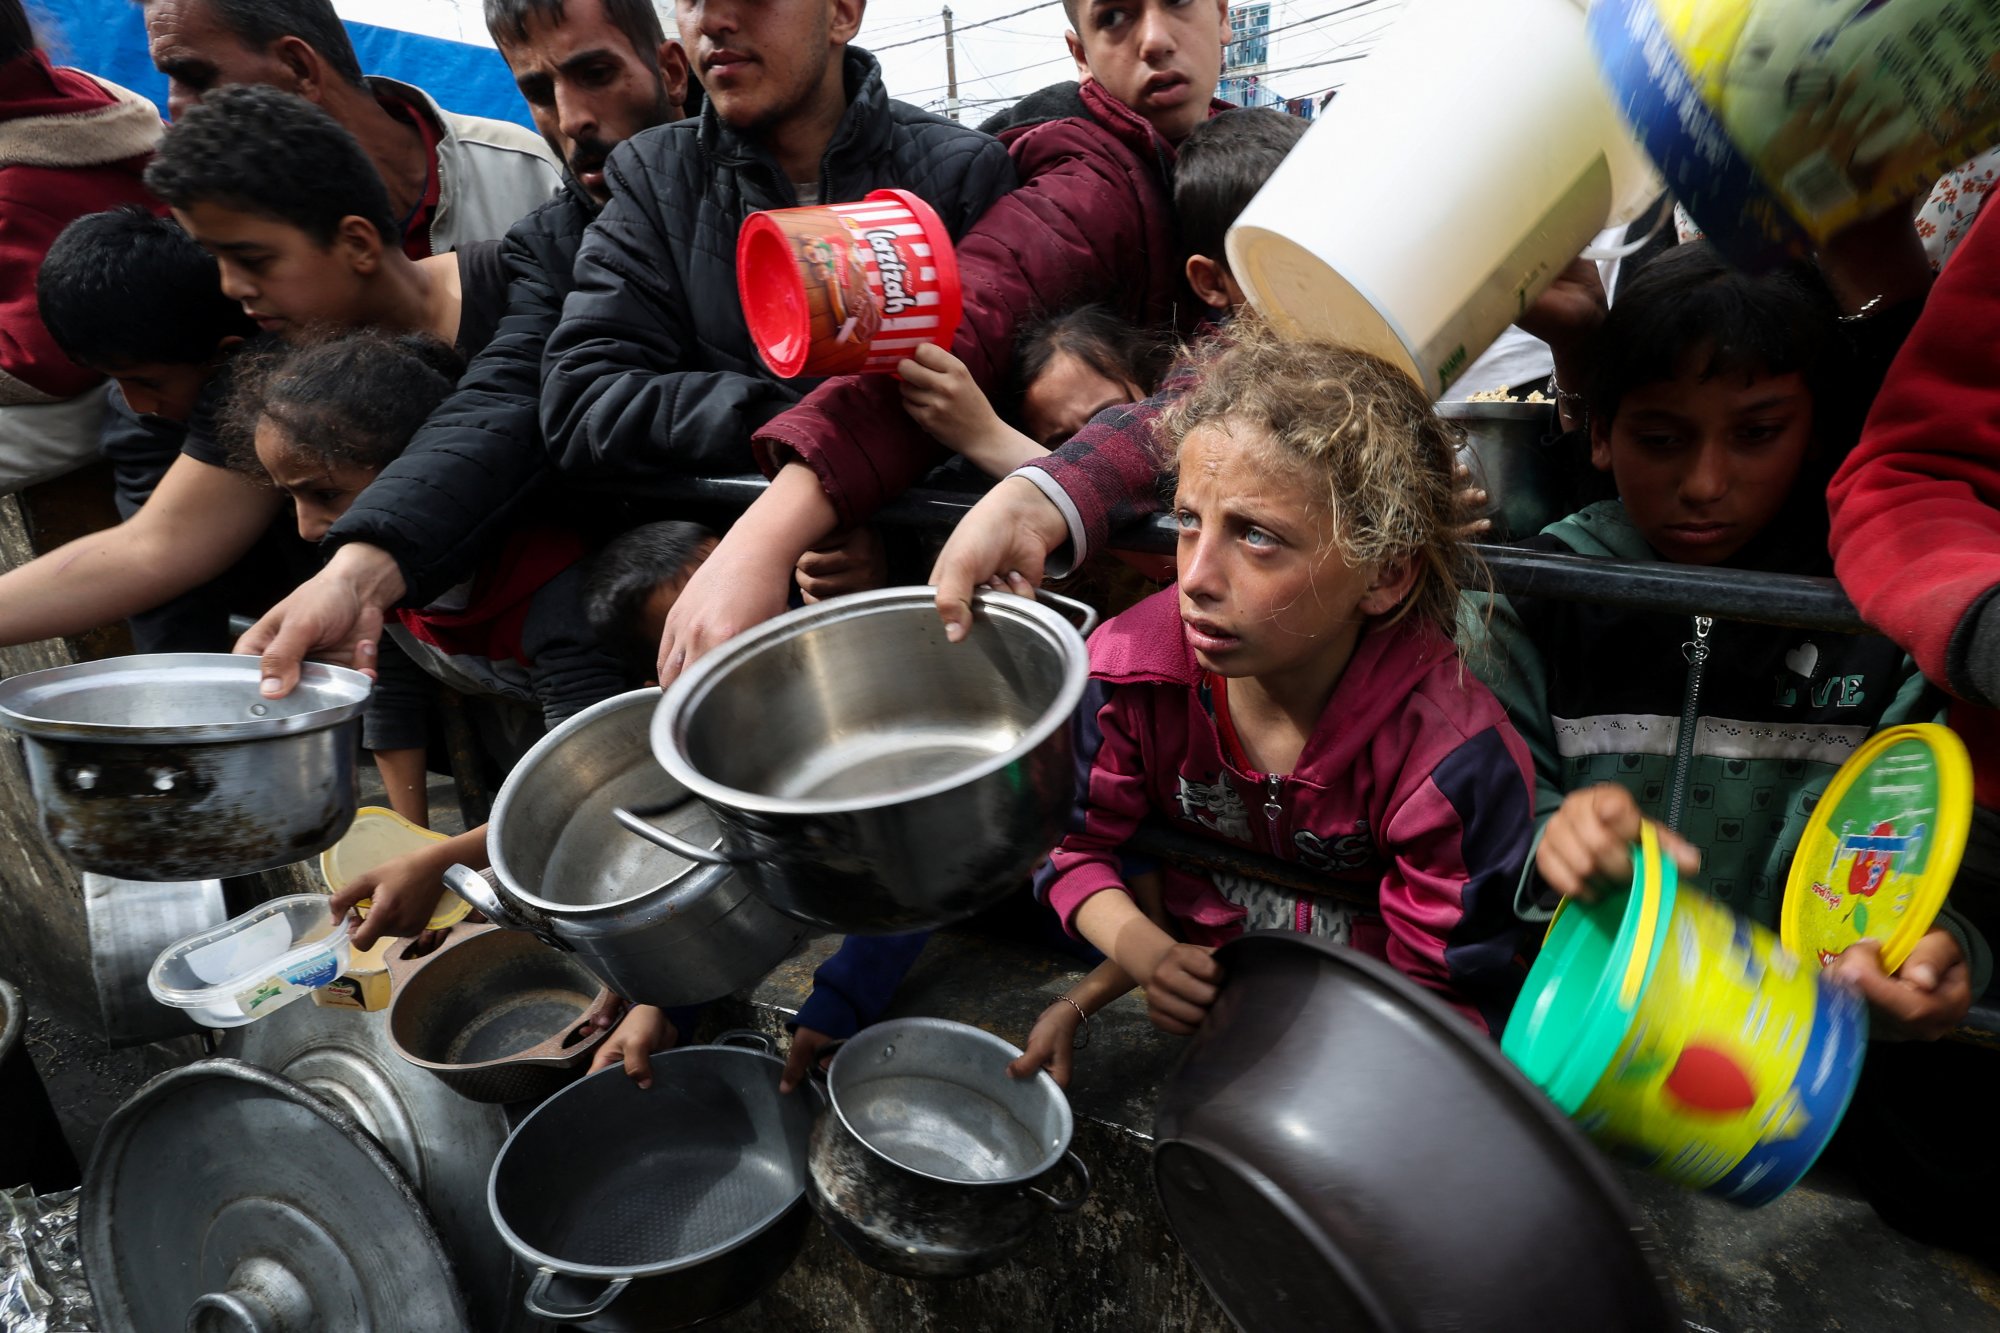 Γάζα: Οχηματοπομπή με 200 τόνους τροφίμων λεηλατήθηκε από ένα «απεγνωσμένο πλήθος»